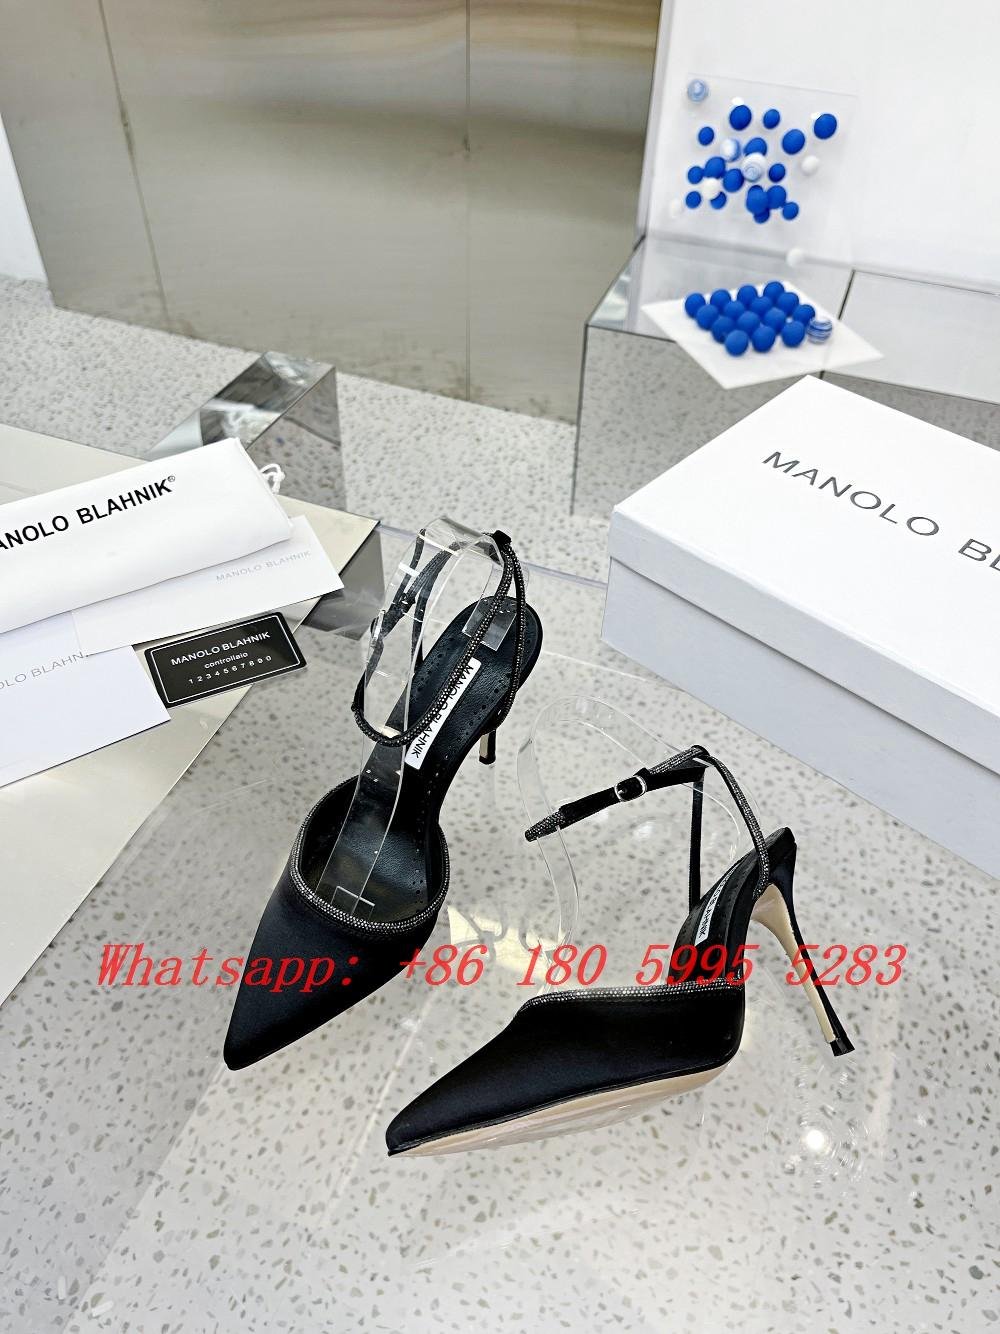 Newest MANOLO BLAHNIK High Heels Hot Sale Crystal Embellished Lurum Pump Pink Pumps